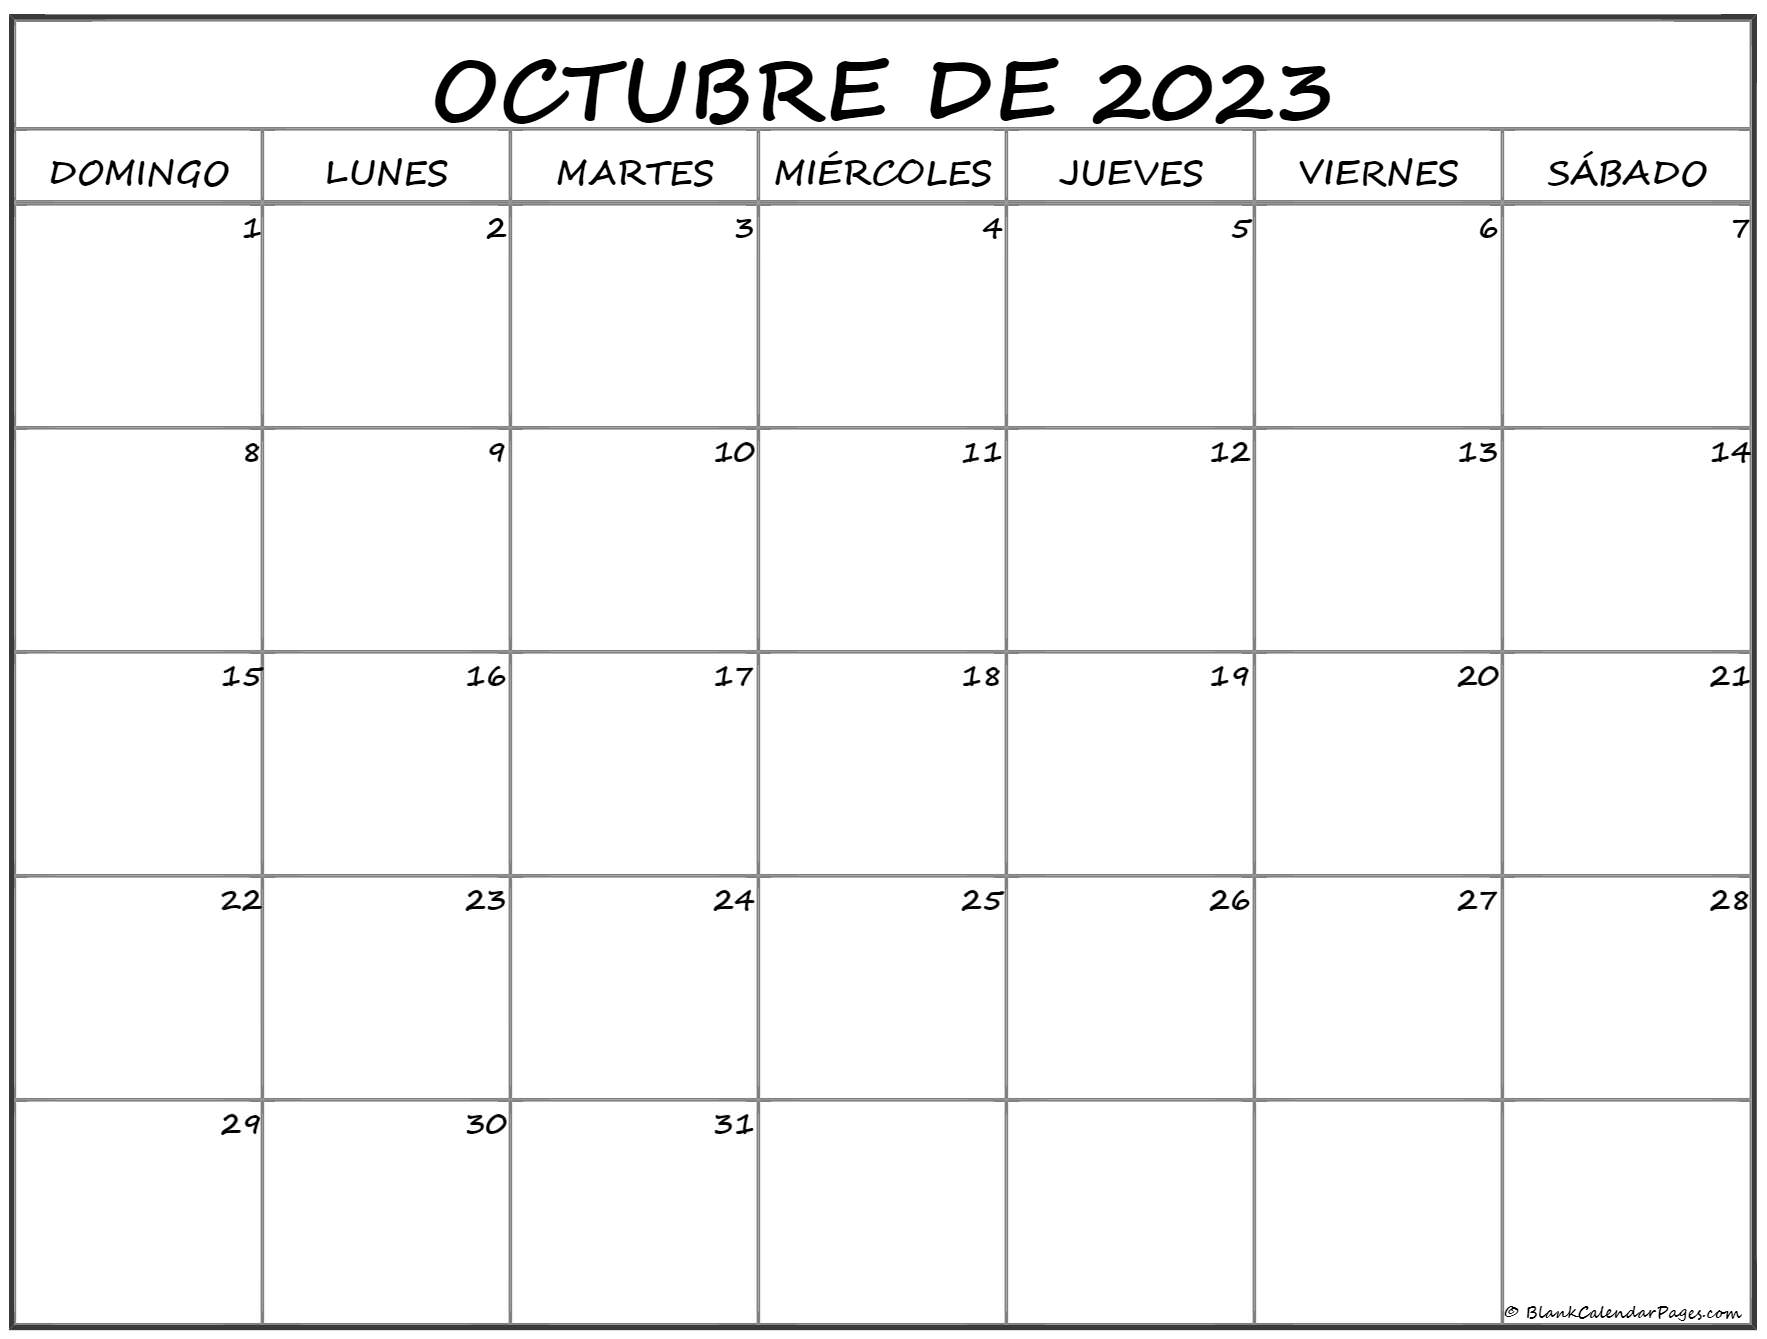 octubre de 2023 calendario gratis Calendario octubre